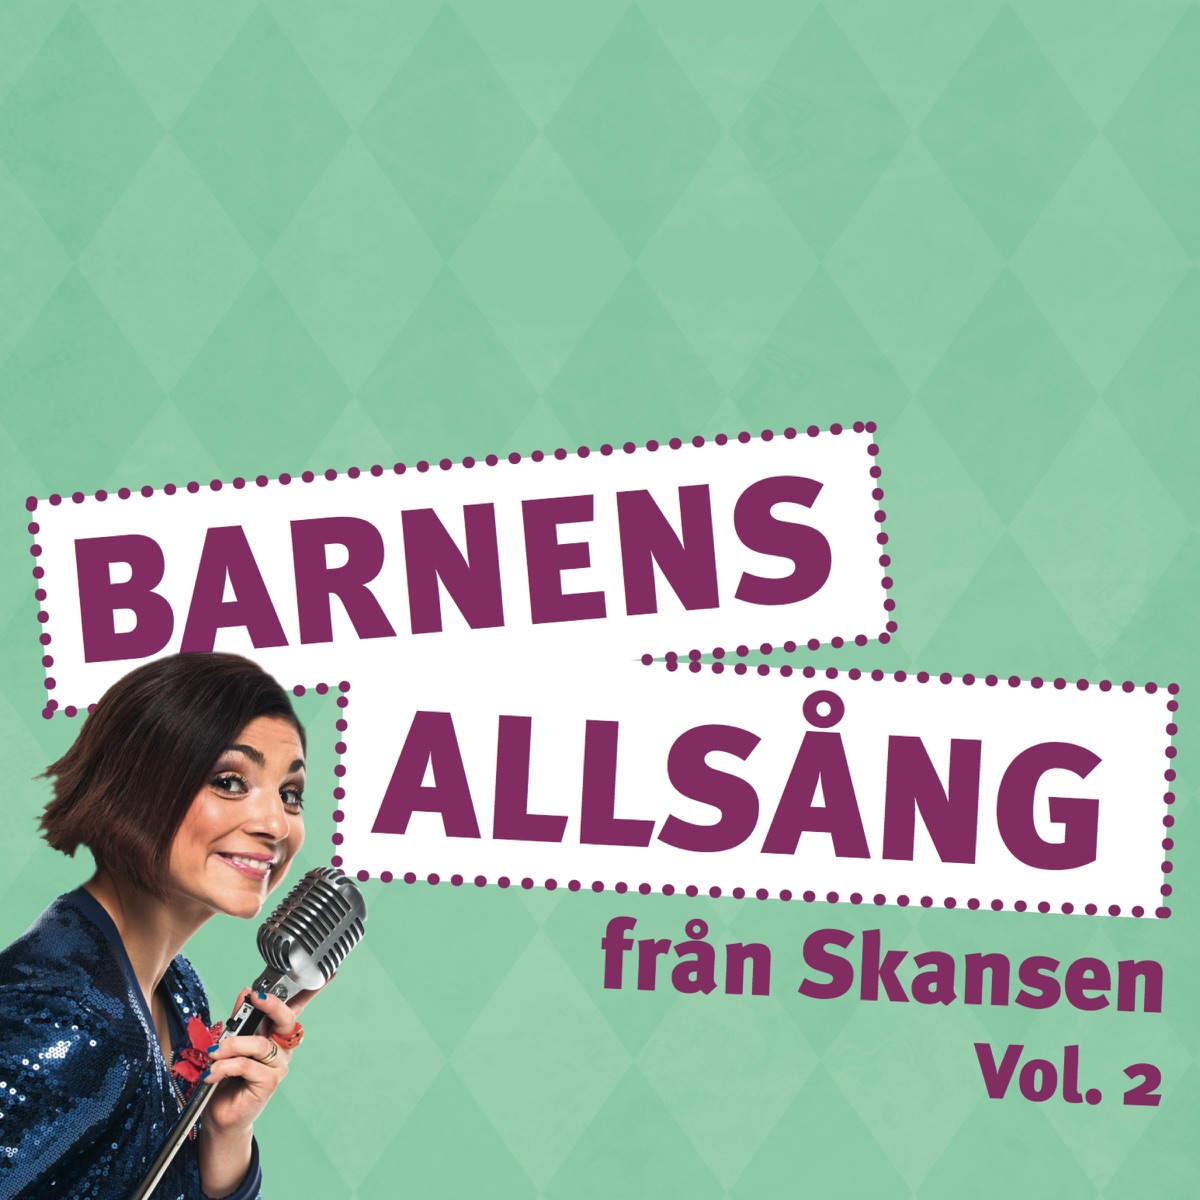 Barnens Allsång på Skansen Vol. 2 - Album by Ayla Kabaca - Apple Music